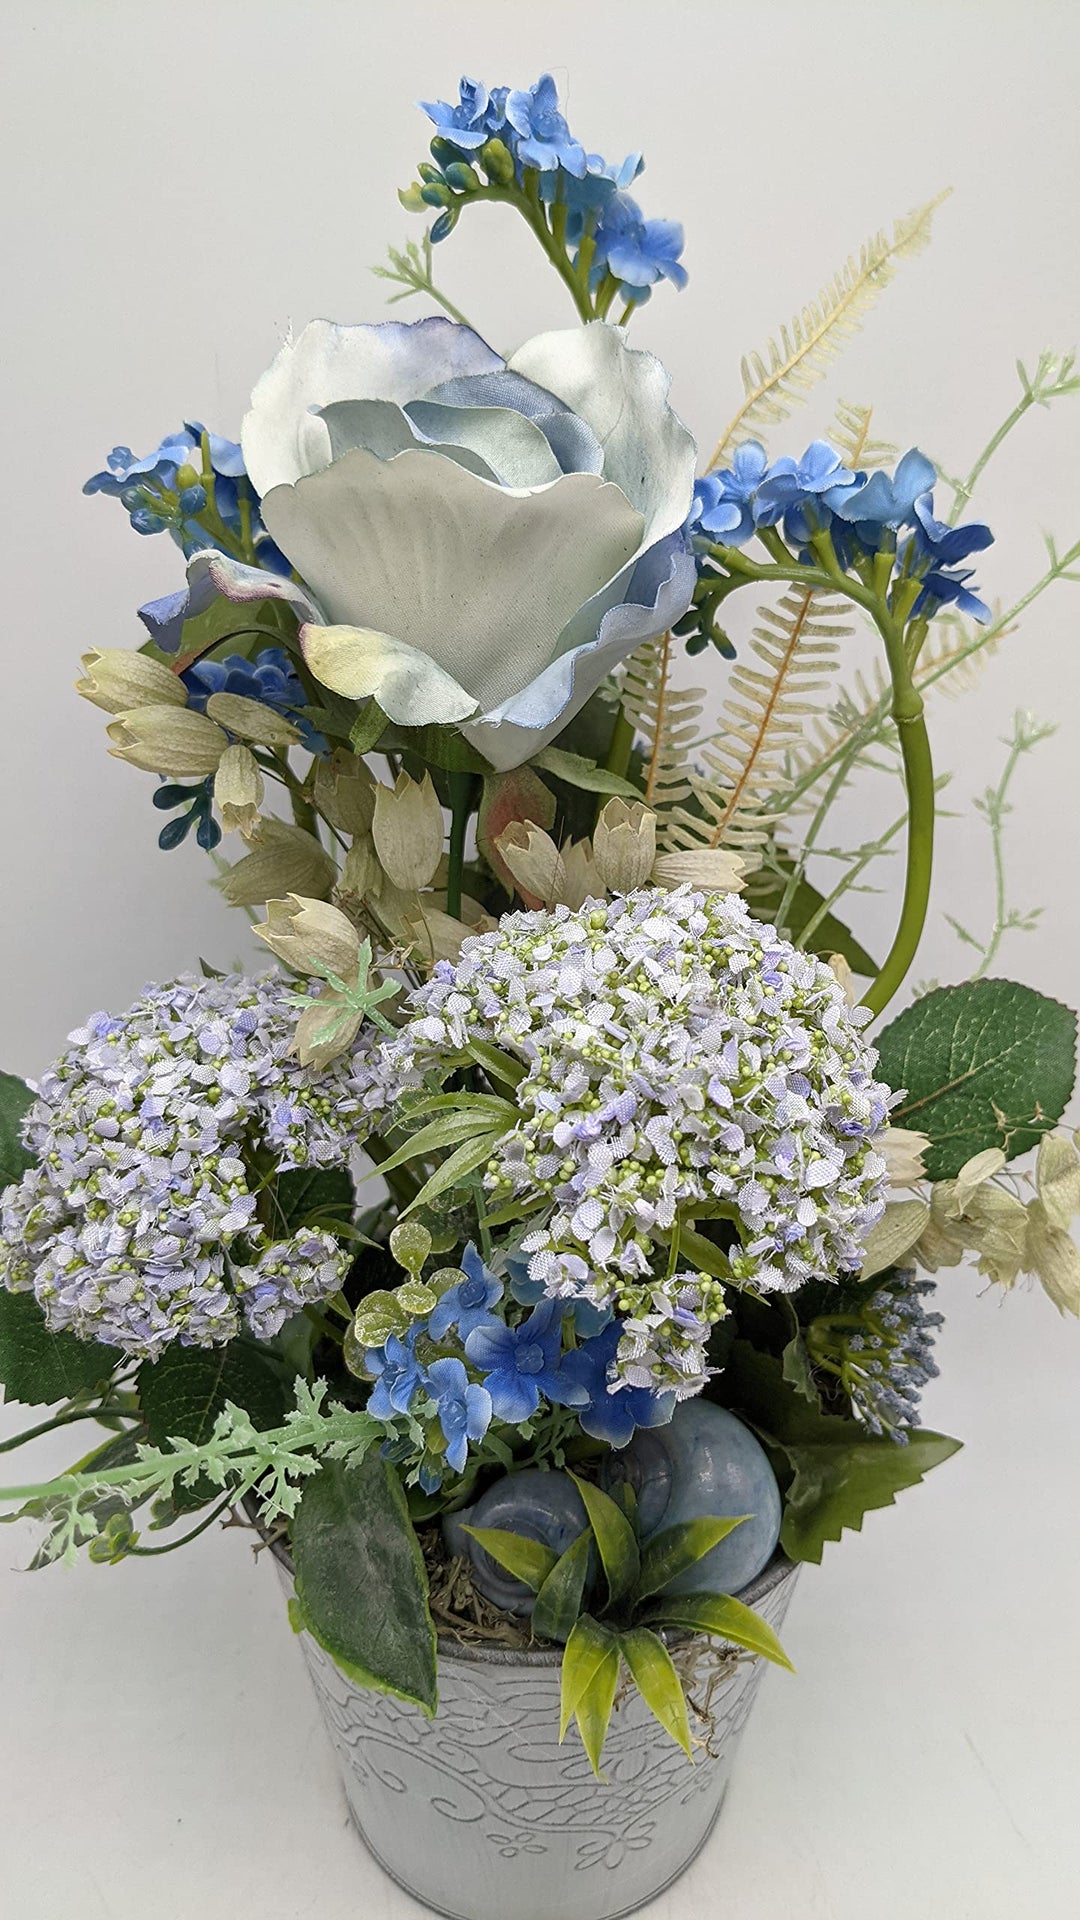 Sommergesteck Tischgesteck Sommerdekoration Seidenblumen Rose Hortensie Schnecken blau